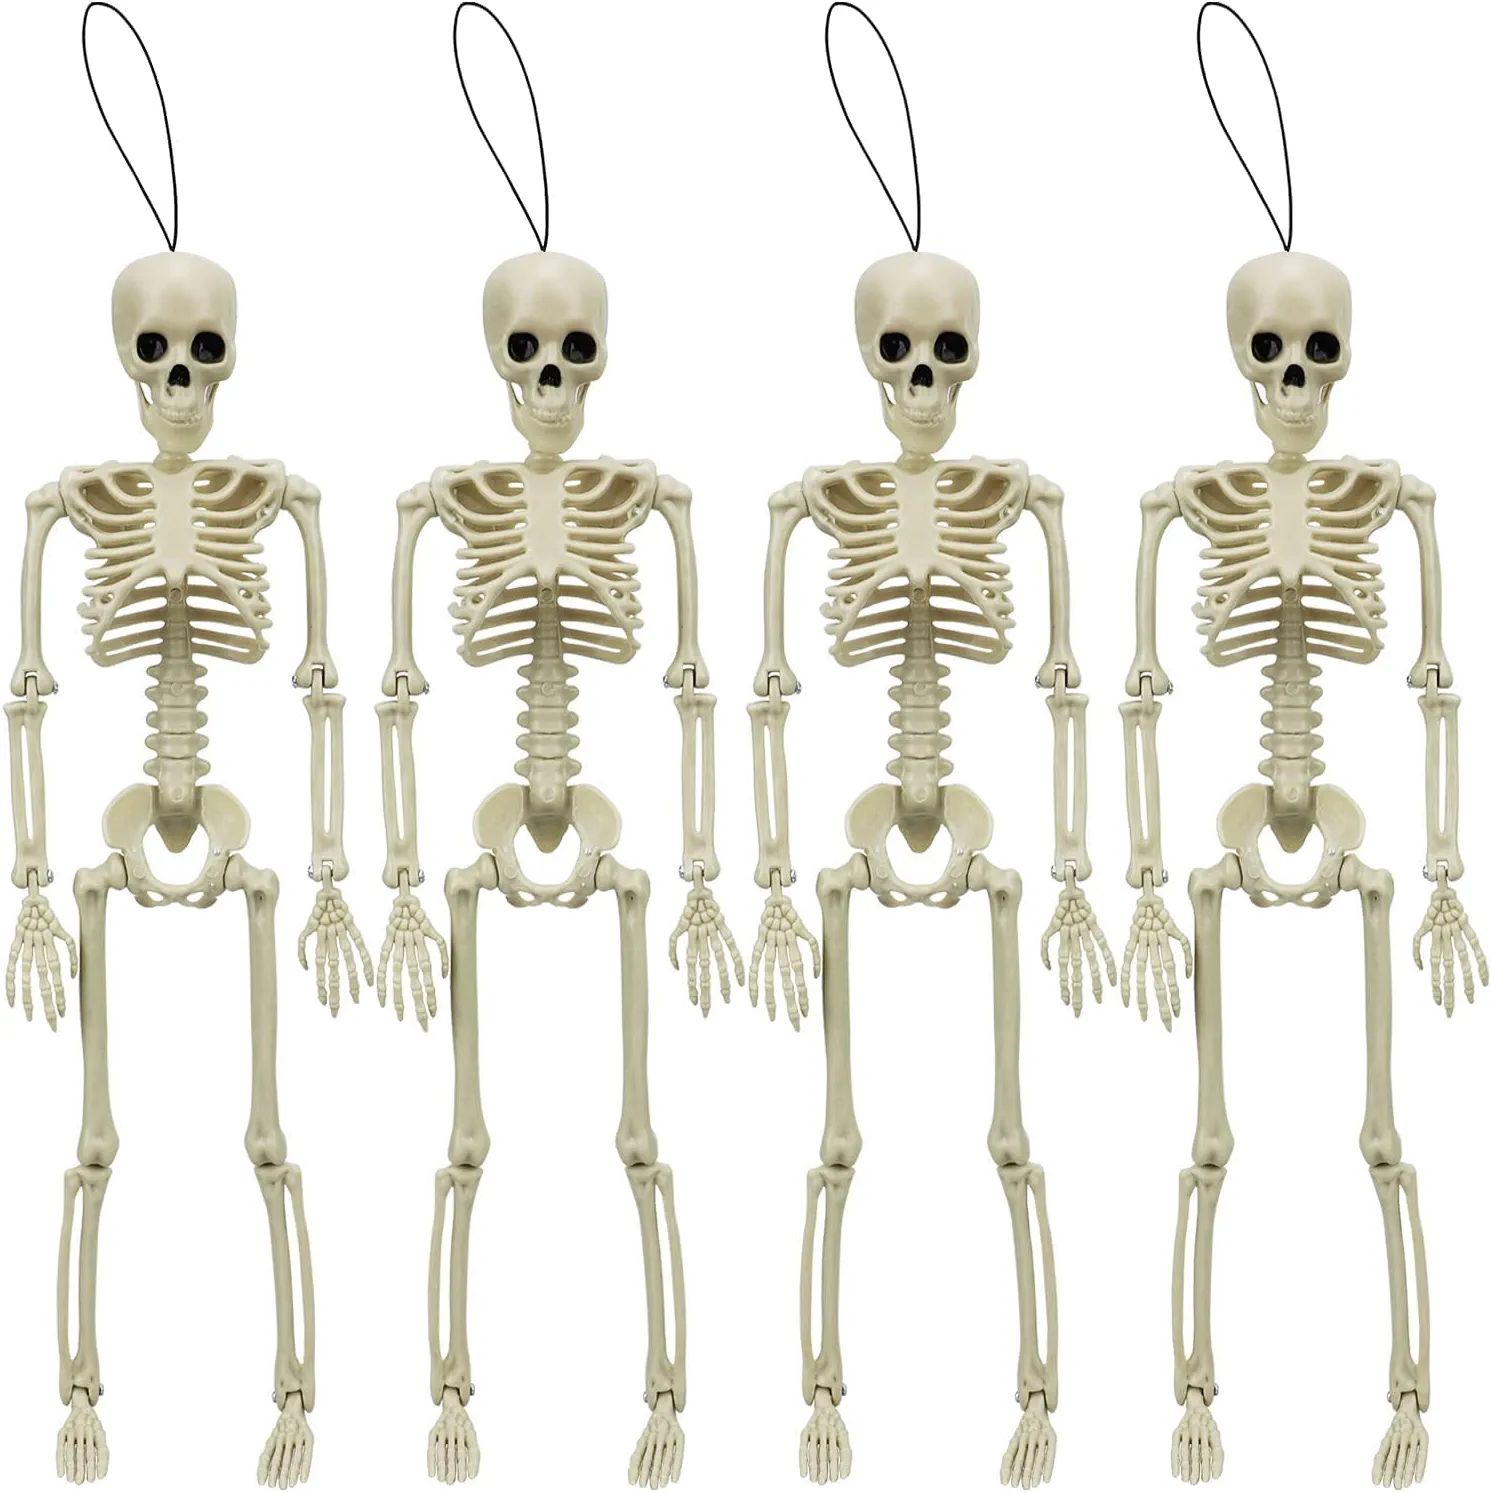 TOY Life 4 Pcs Halloween Hanging Skeleton Decoration - 16” Posable Skeleton Halloween Decoratio... | Amazon (US)